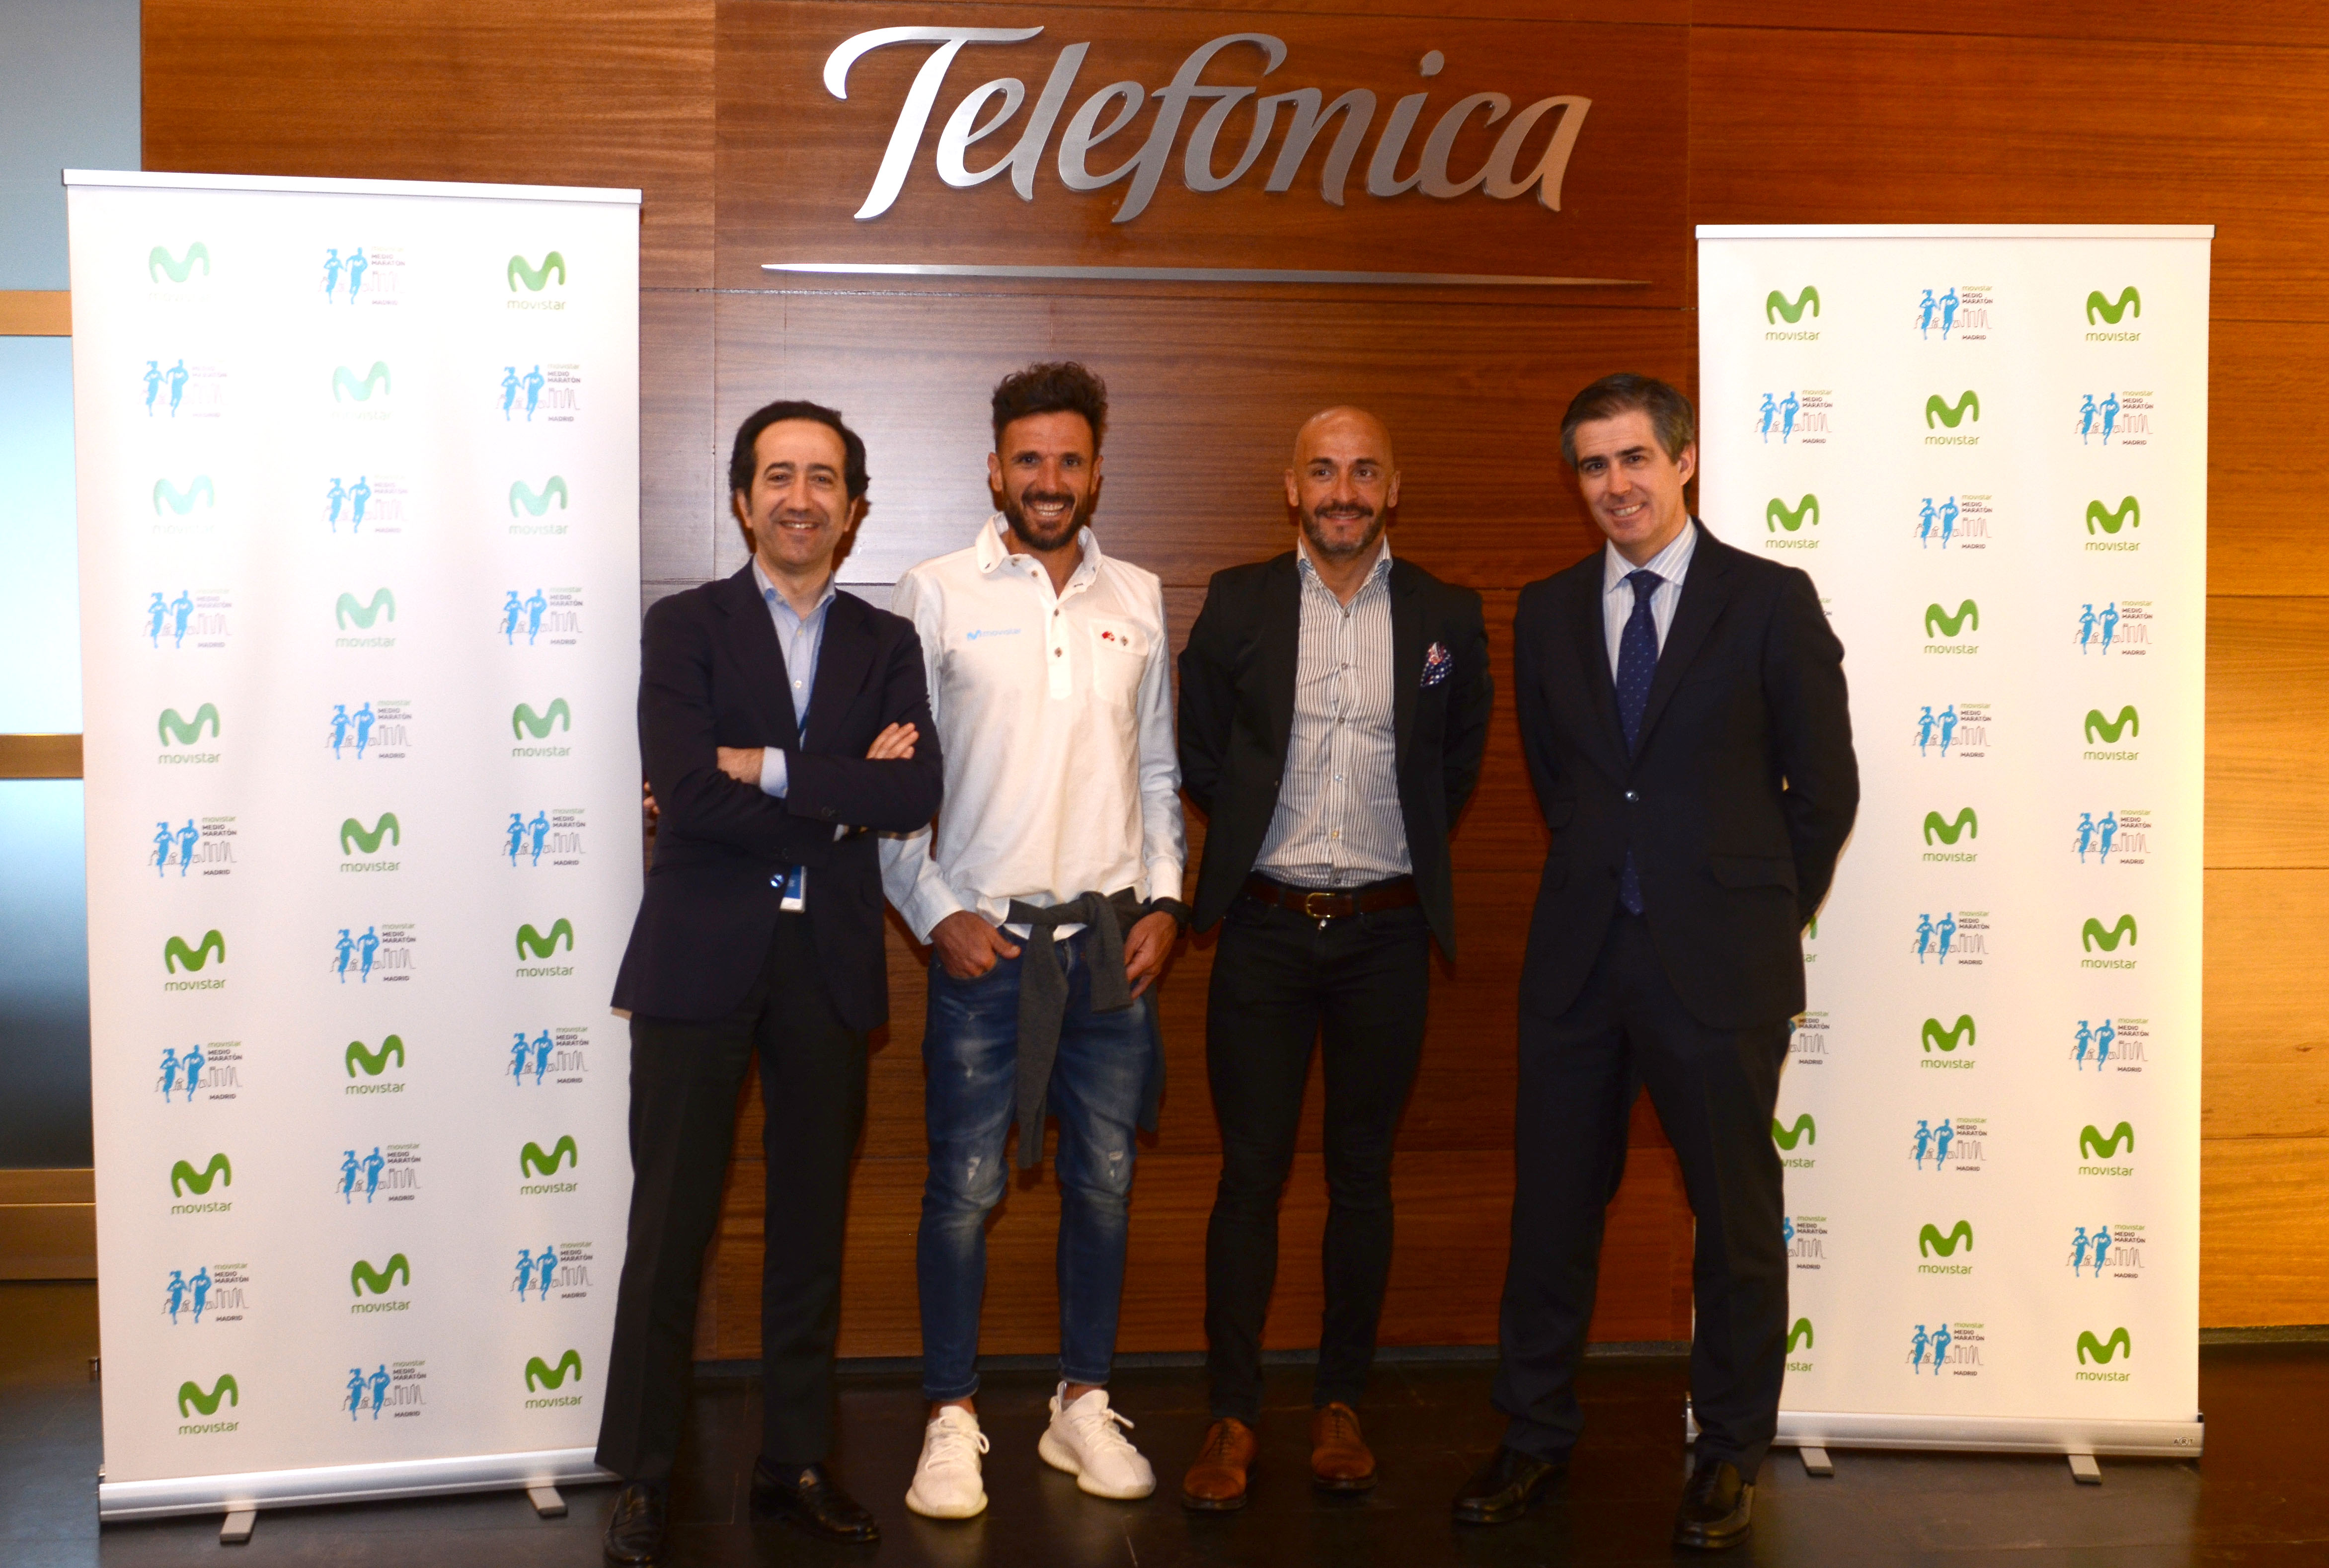 De izquierda a derecha: Vicente Muñoz, Chief IoT Officer Telefónica; Chema Martínez, atleta patrocinado por Telefónica; Jesús Celada, Presidente ADE Maratón; y Rafael Fernández de Alarcón, Director de Patrocinios Telefónica S.A